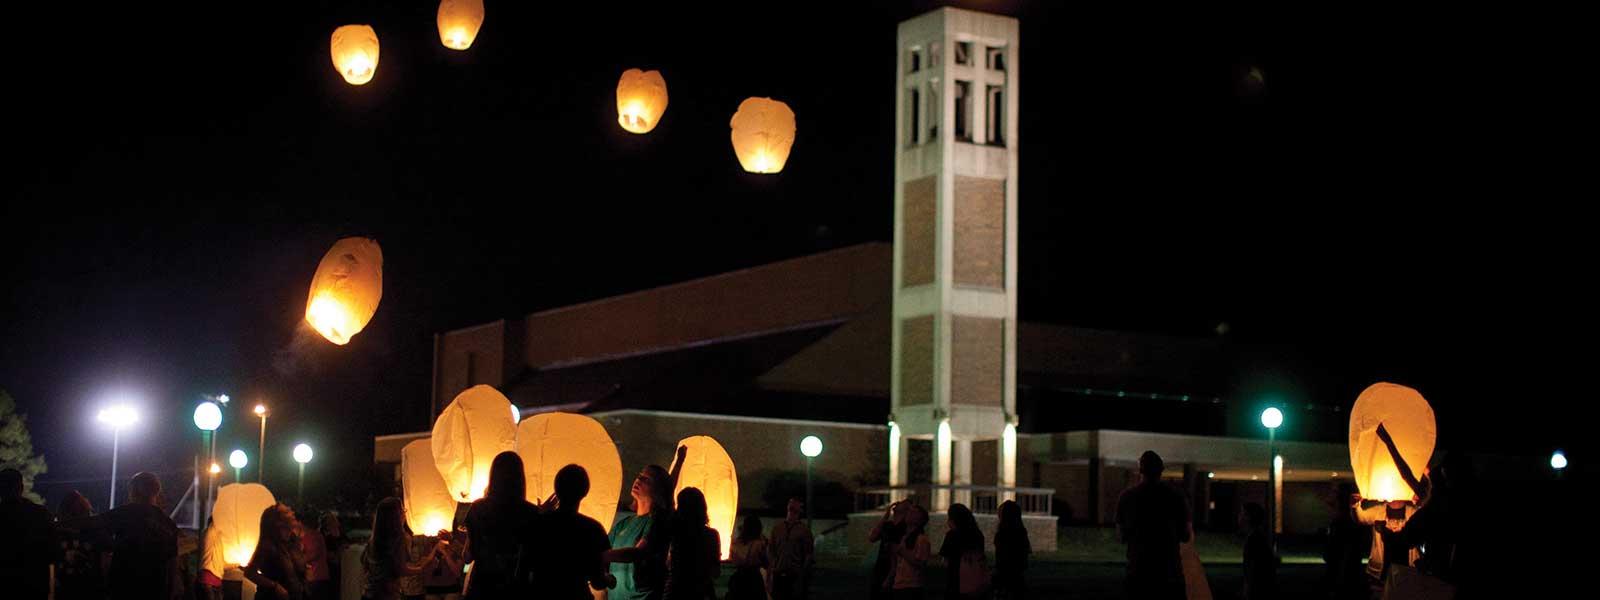 学生们在钟楼前向夜空放飞灯笼